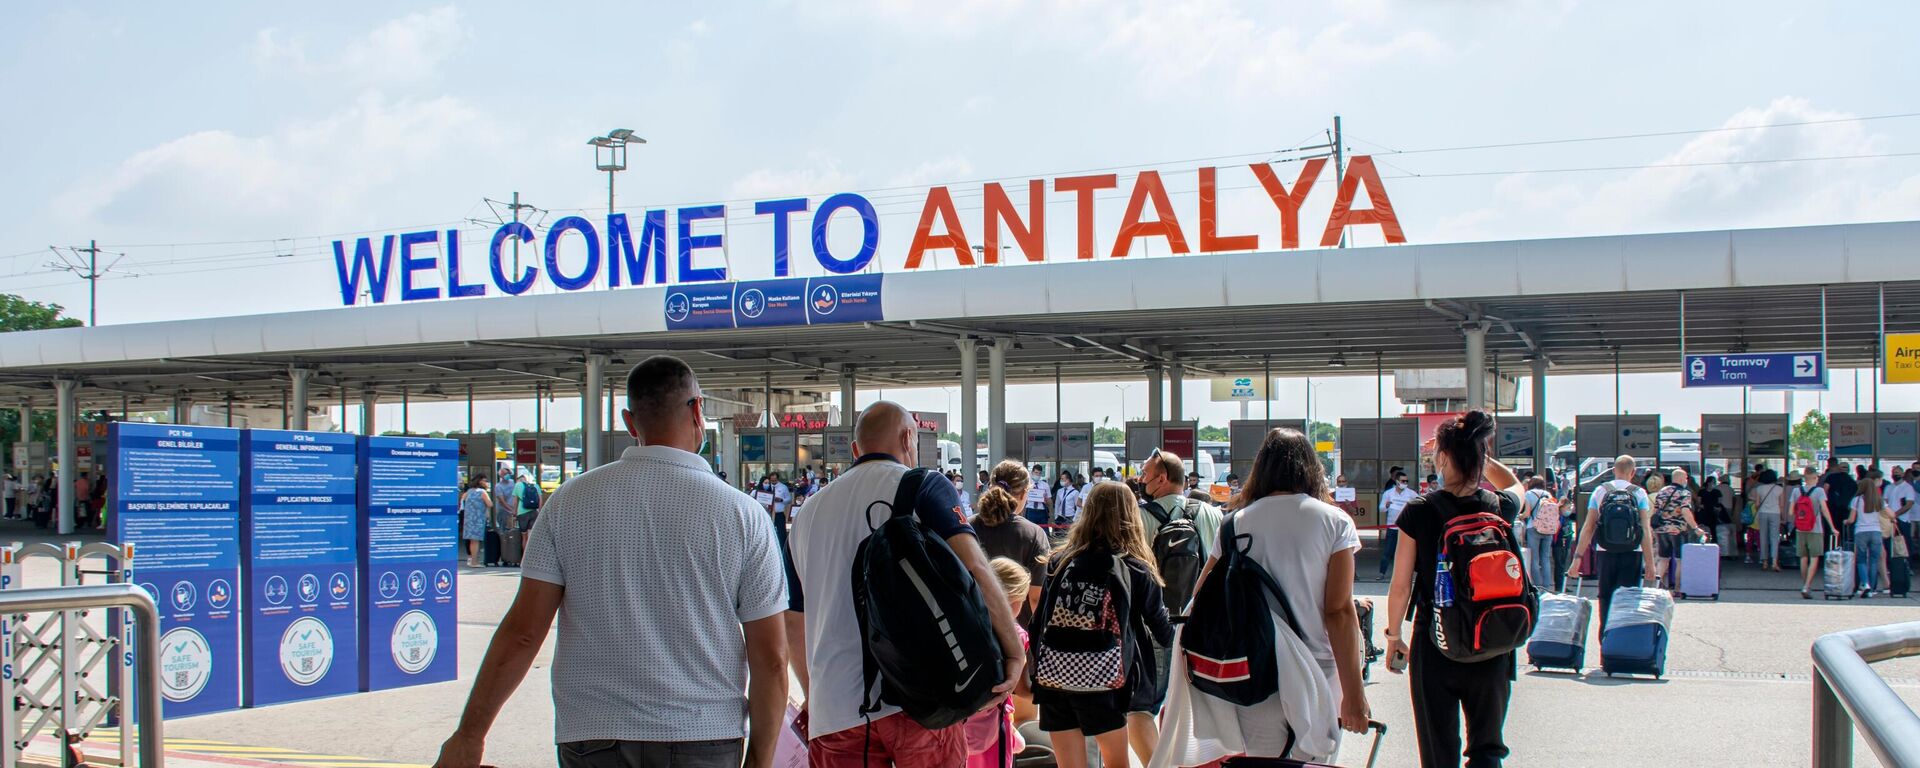 Antalya'da turizm verilerindeki artış devam ediyor. Antalya Valiliği İl Kültür ve Turizm Müdürlüğü'nden alınan verilere göre 1 Ocak-30 Nisan arası şehri hava yoluyla ziyaret eden turist sayısı 2021 yılına göre yüzde 162 arttı. - Sputnik Türkiye, 1920, 01.11.2022